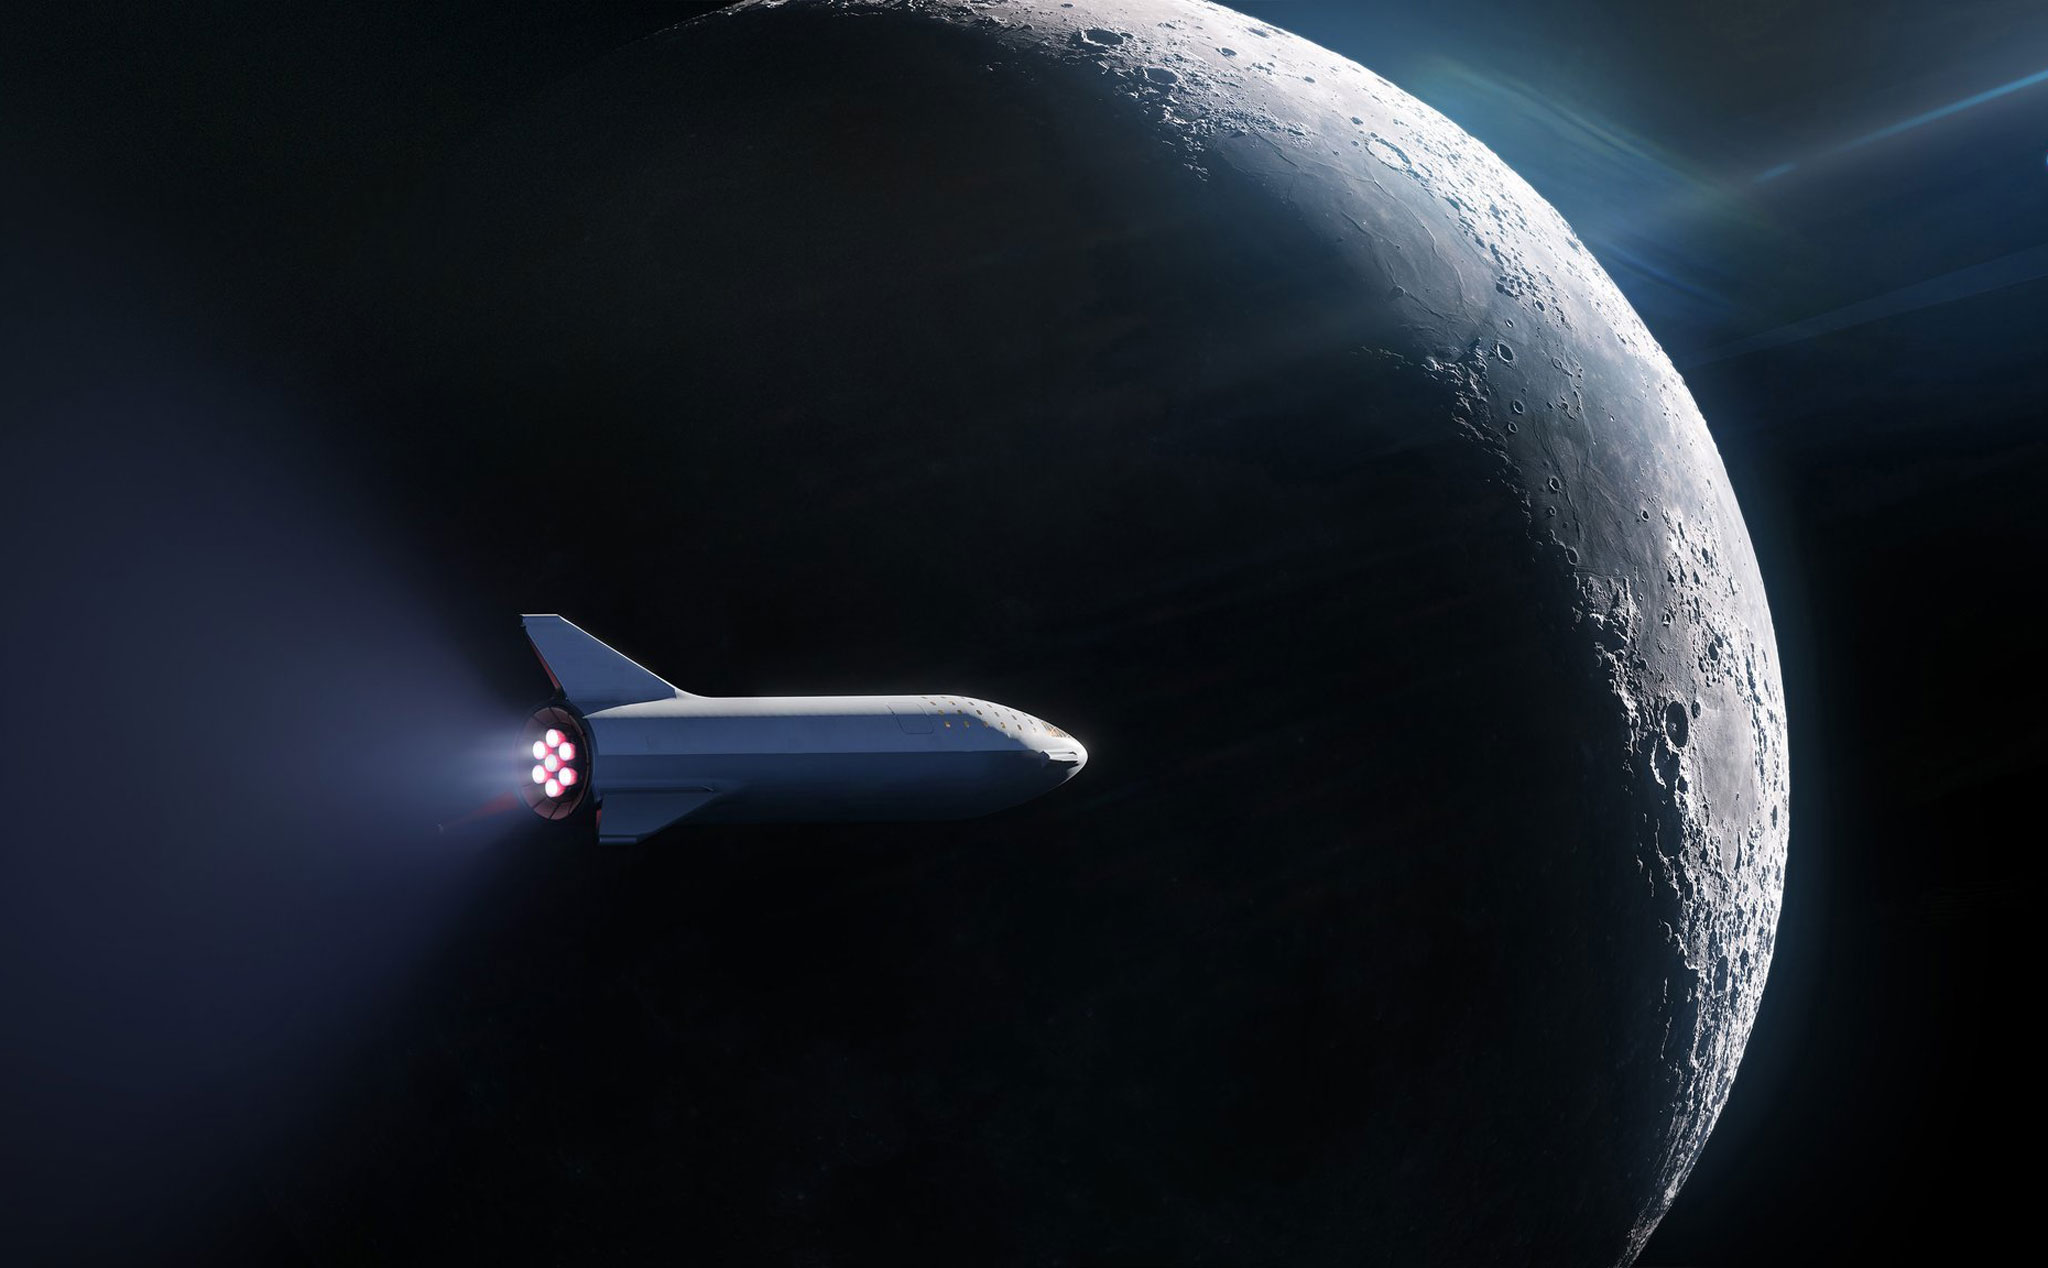 Đã có người ký hợp đồng với SpaceX để du hành xung quanh Mặt Trăng nhờ tên lửa